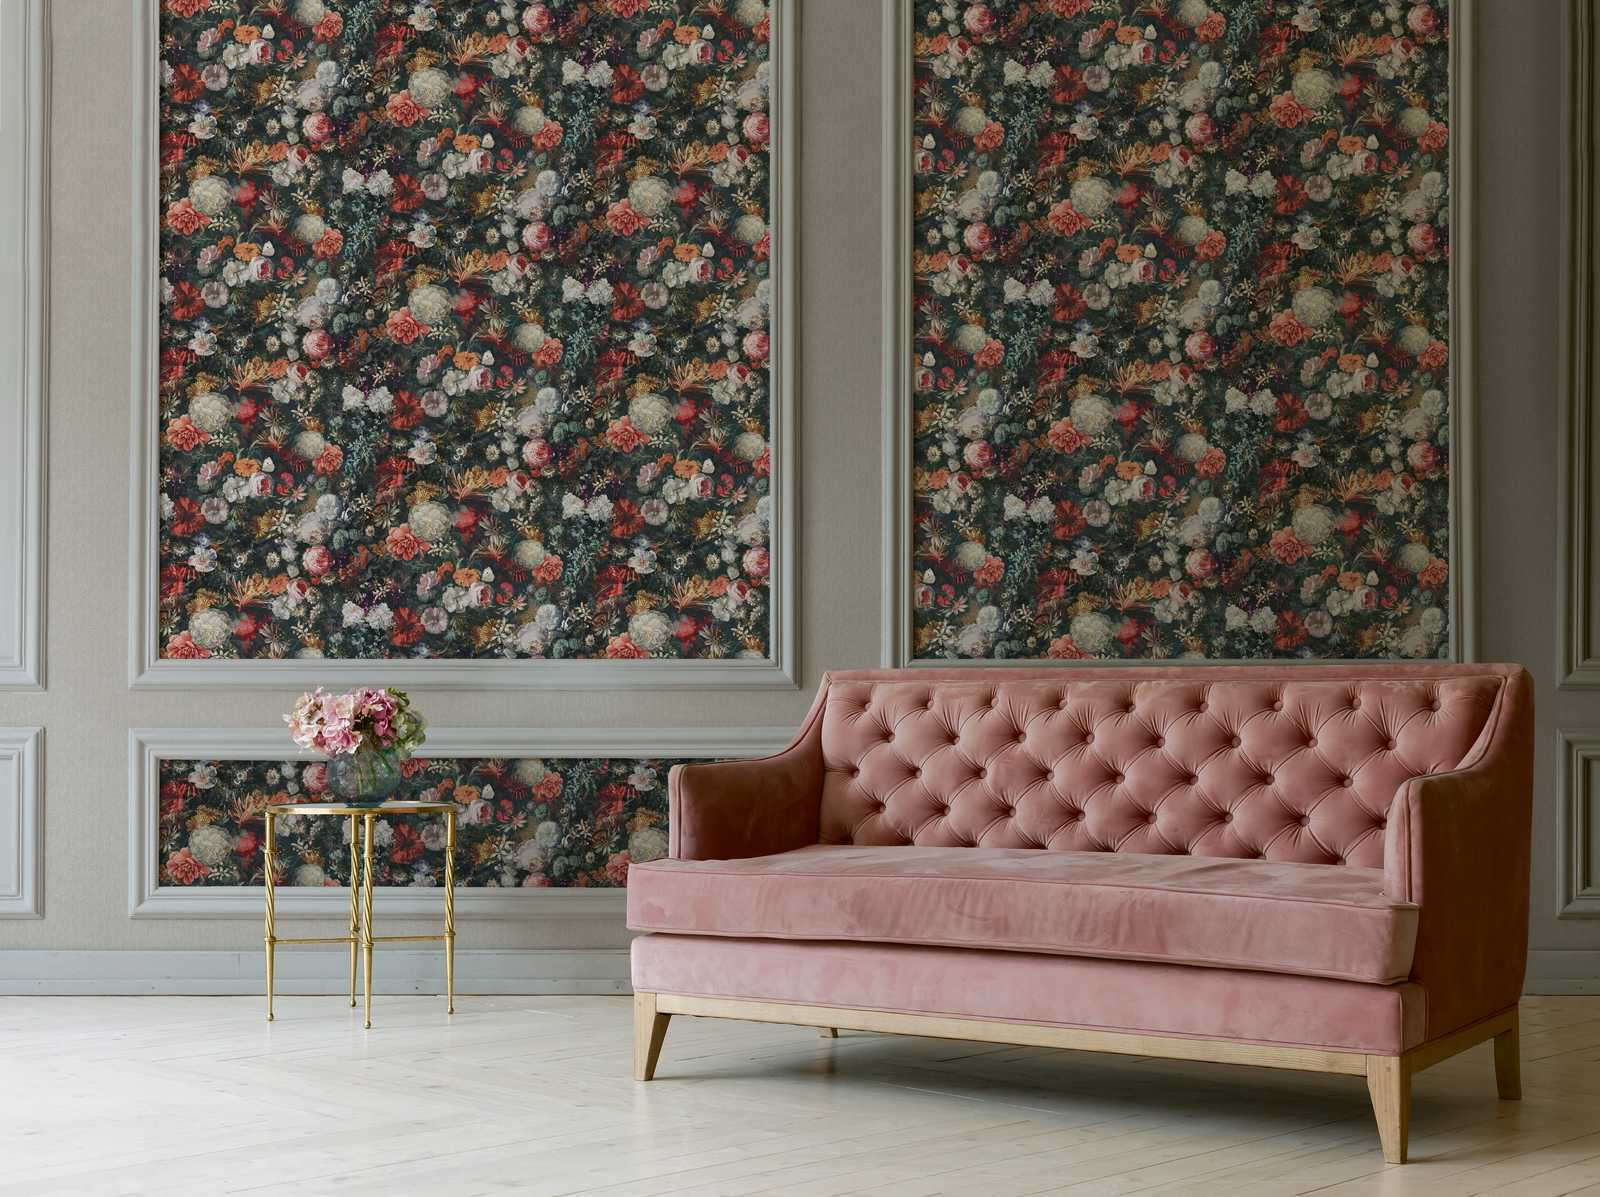             Papel pintado floral diseño vintage con rosas - colorido, gris, naranja
        